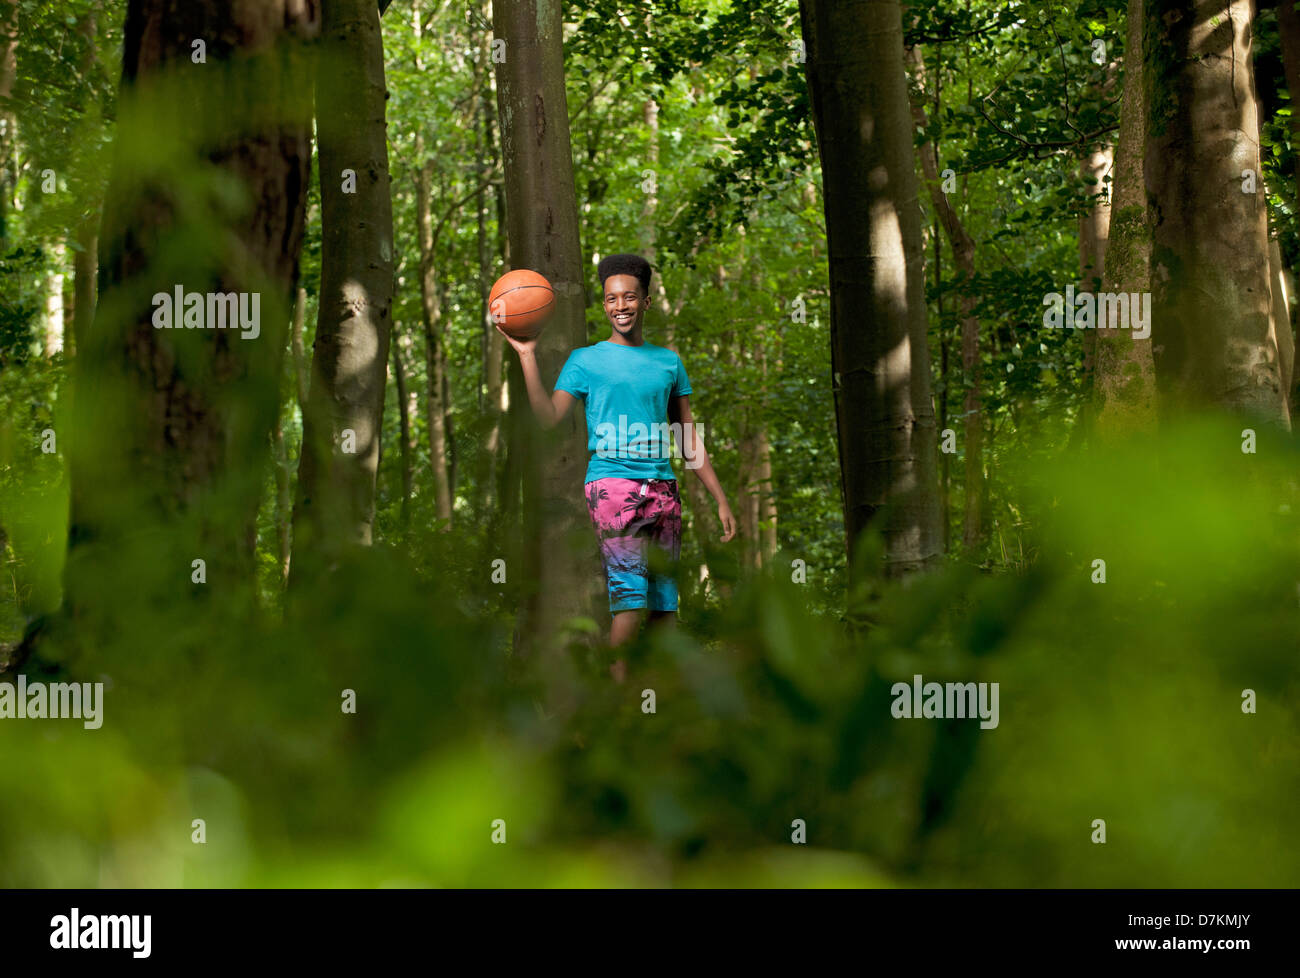 Jeune homme noir jouant au basket-ball dans les bois Banque D'Images